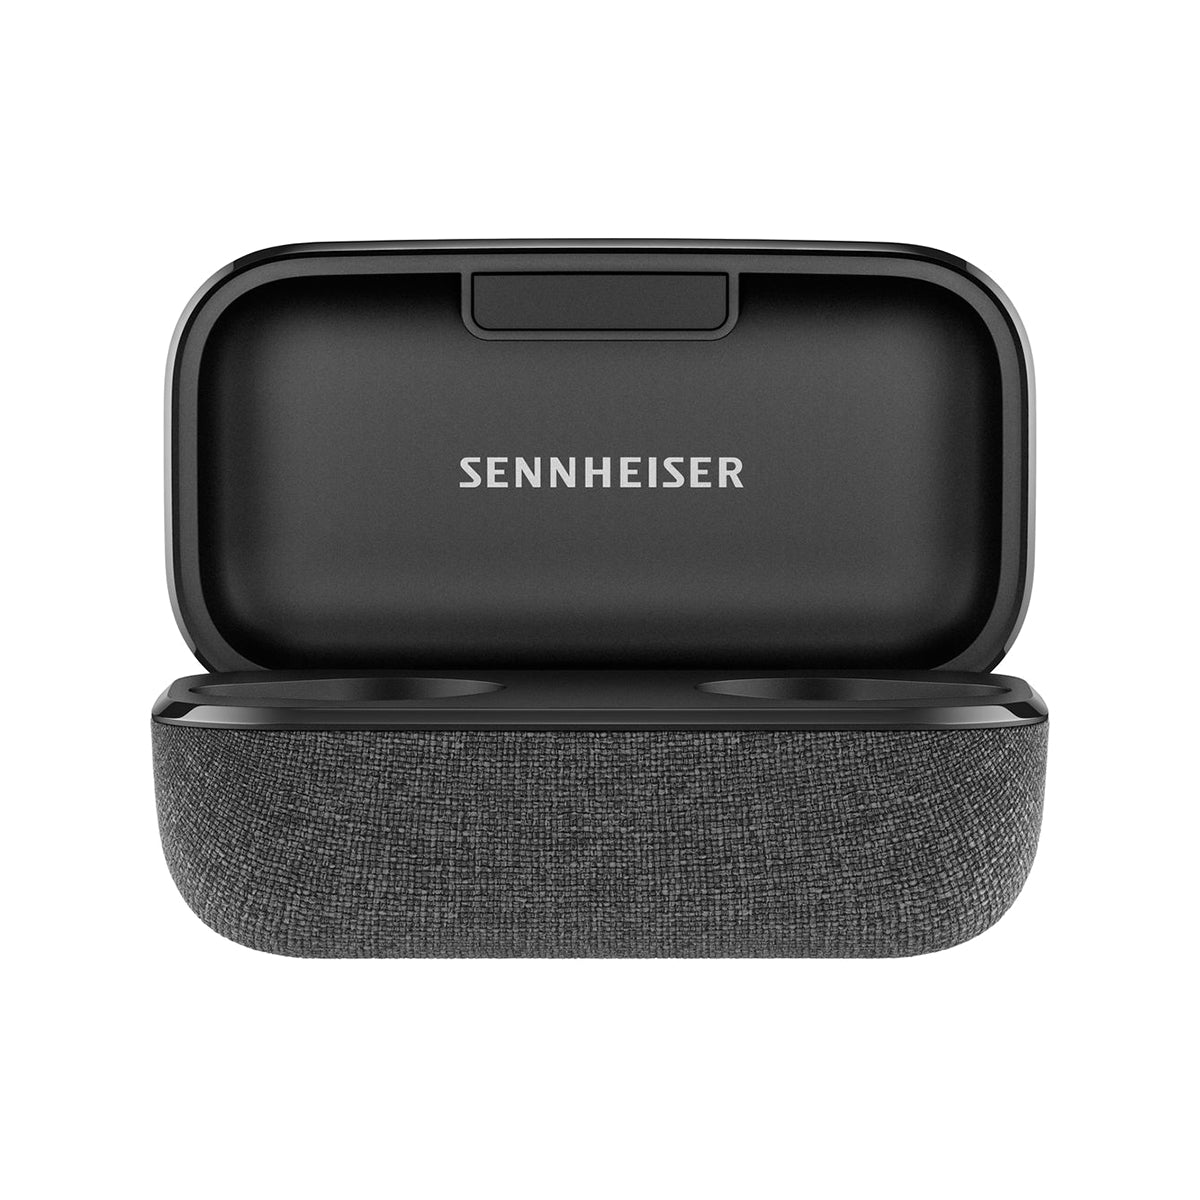 Sennheiser Momentum True Wireless 2 In-Ear Earbuds for Mobile Phones - Black